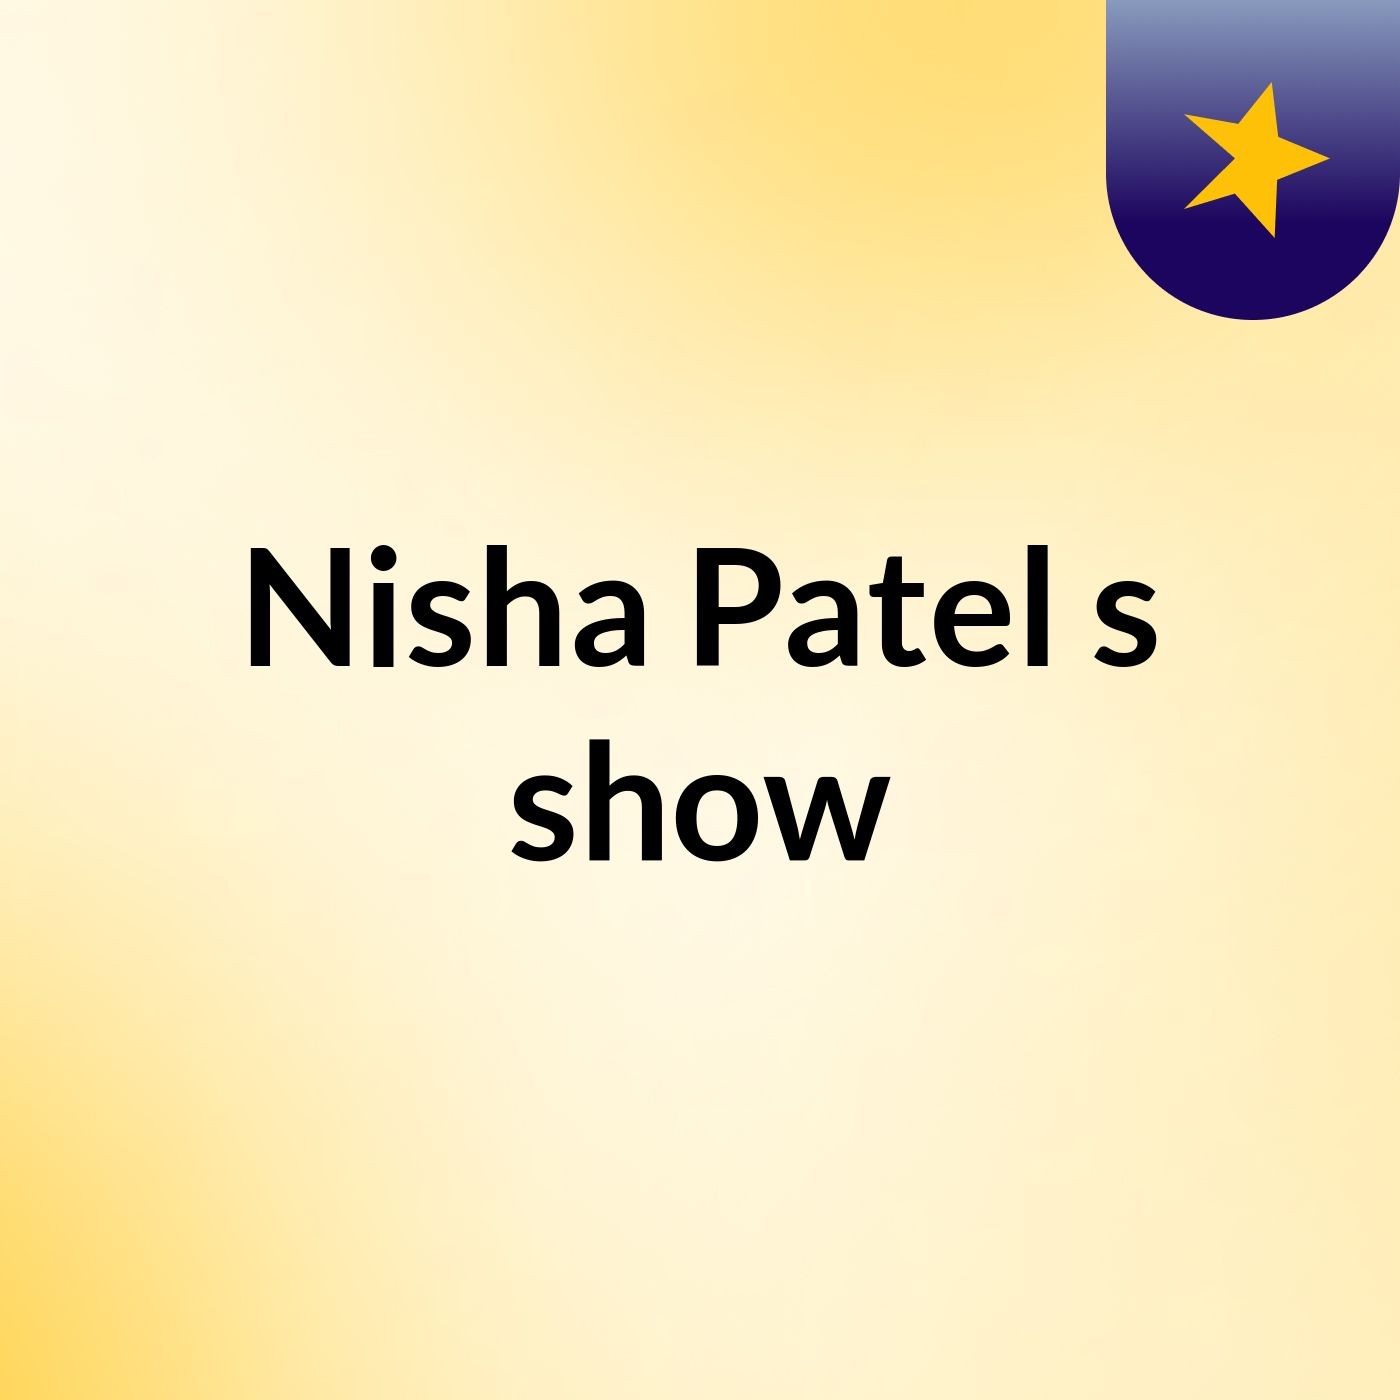 Nisha Patel's show